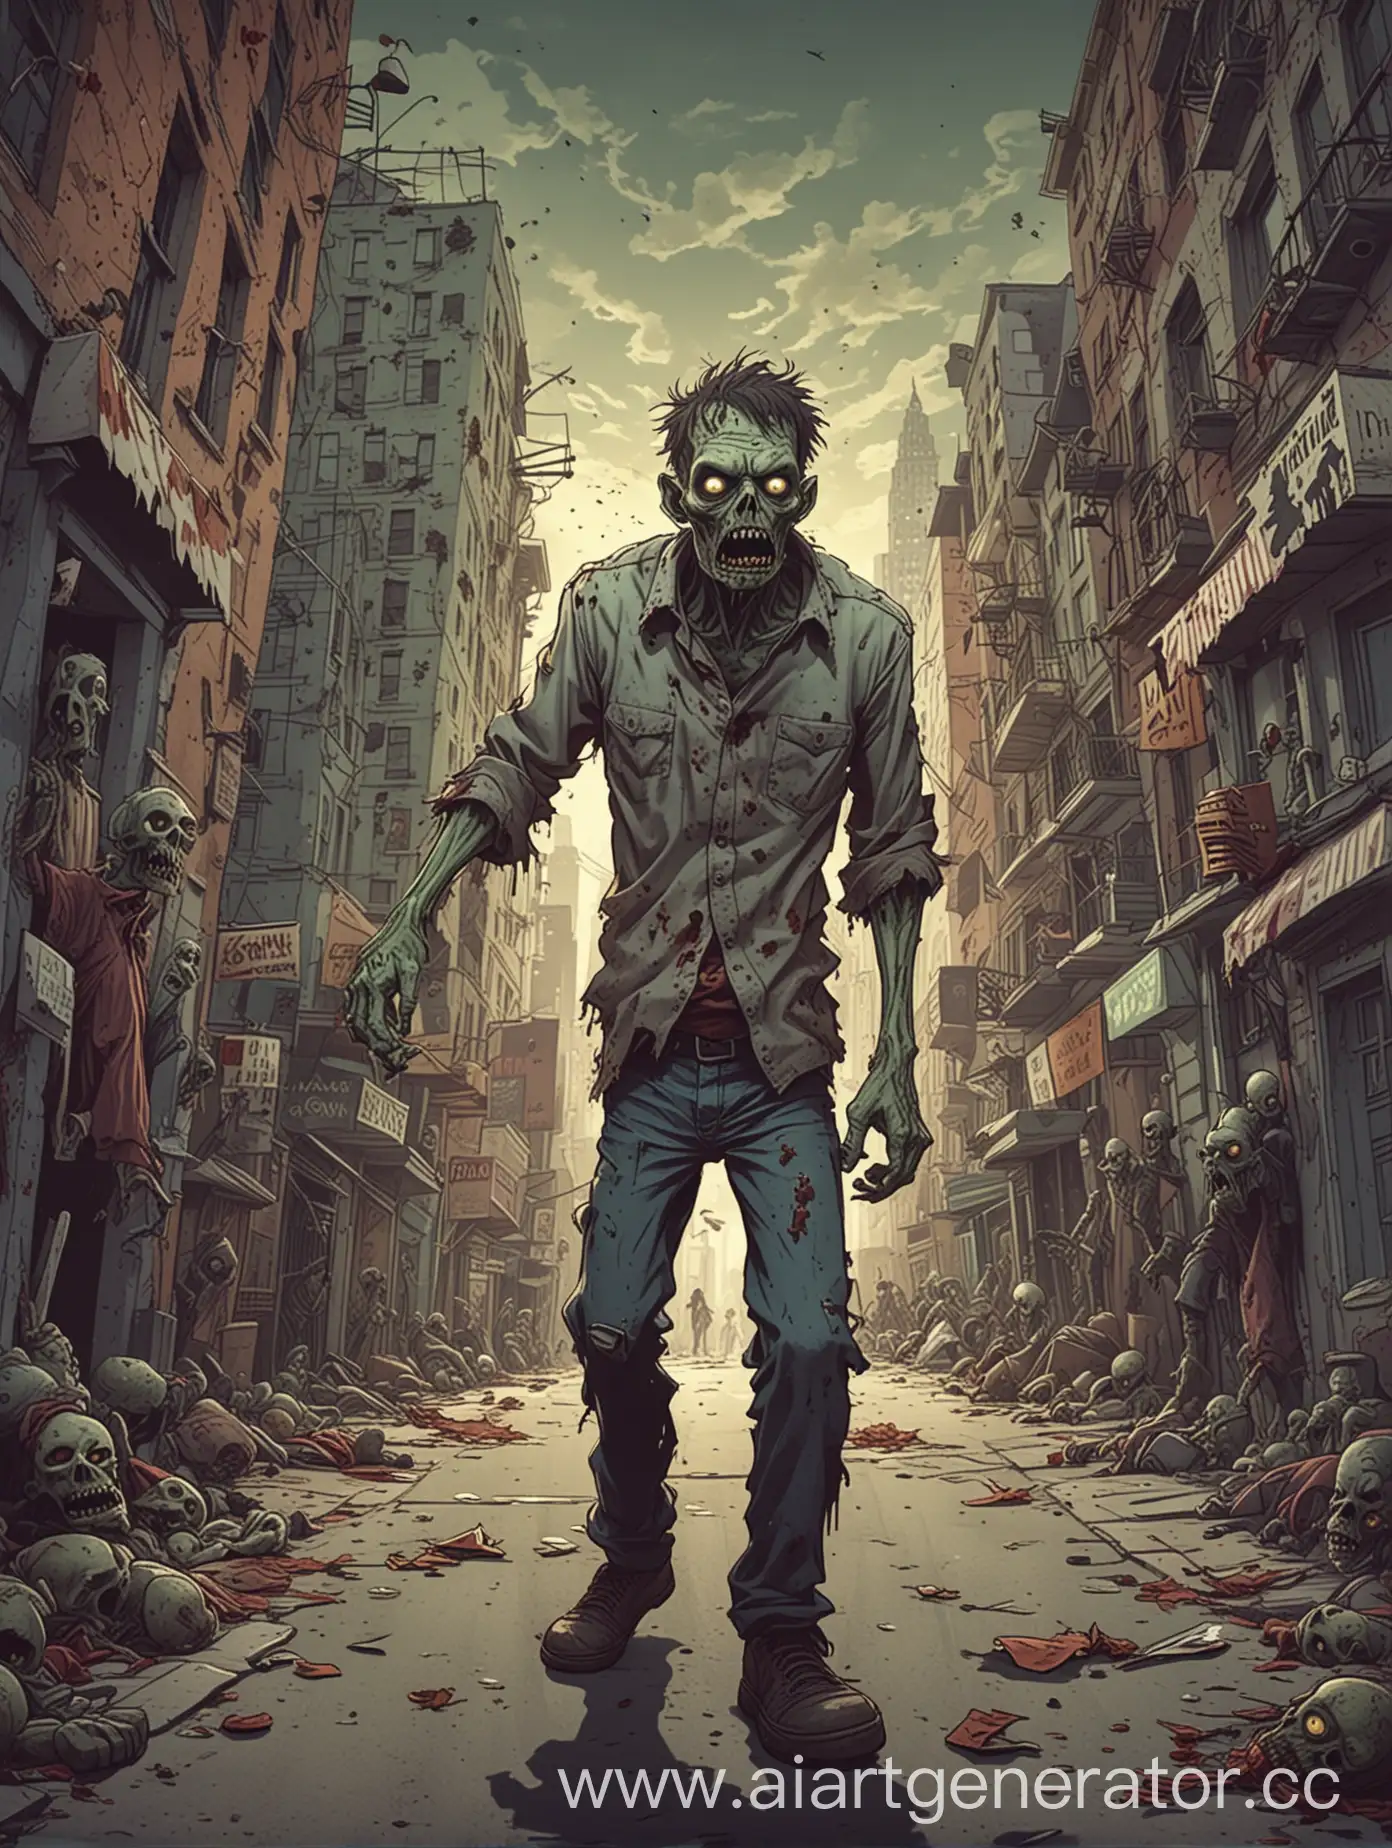 Cartoonish-Zombie-Roams-the-City-Streets